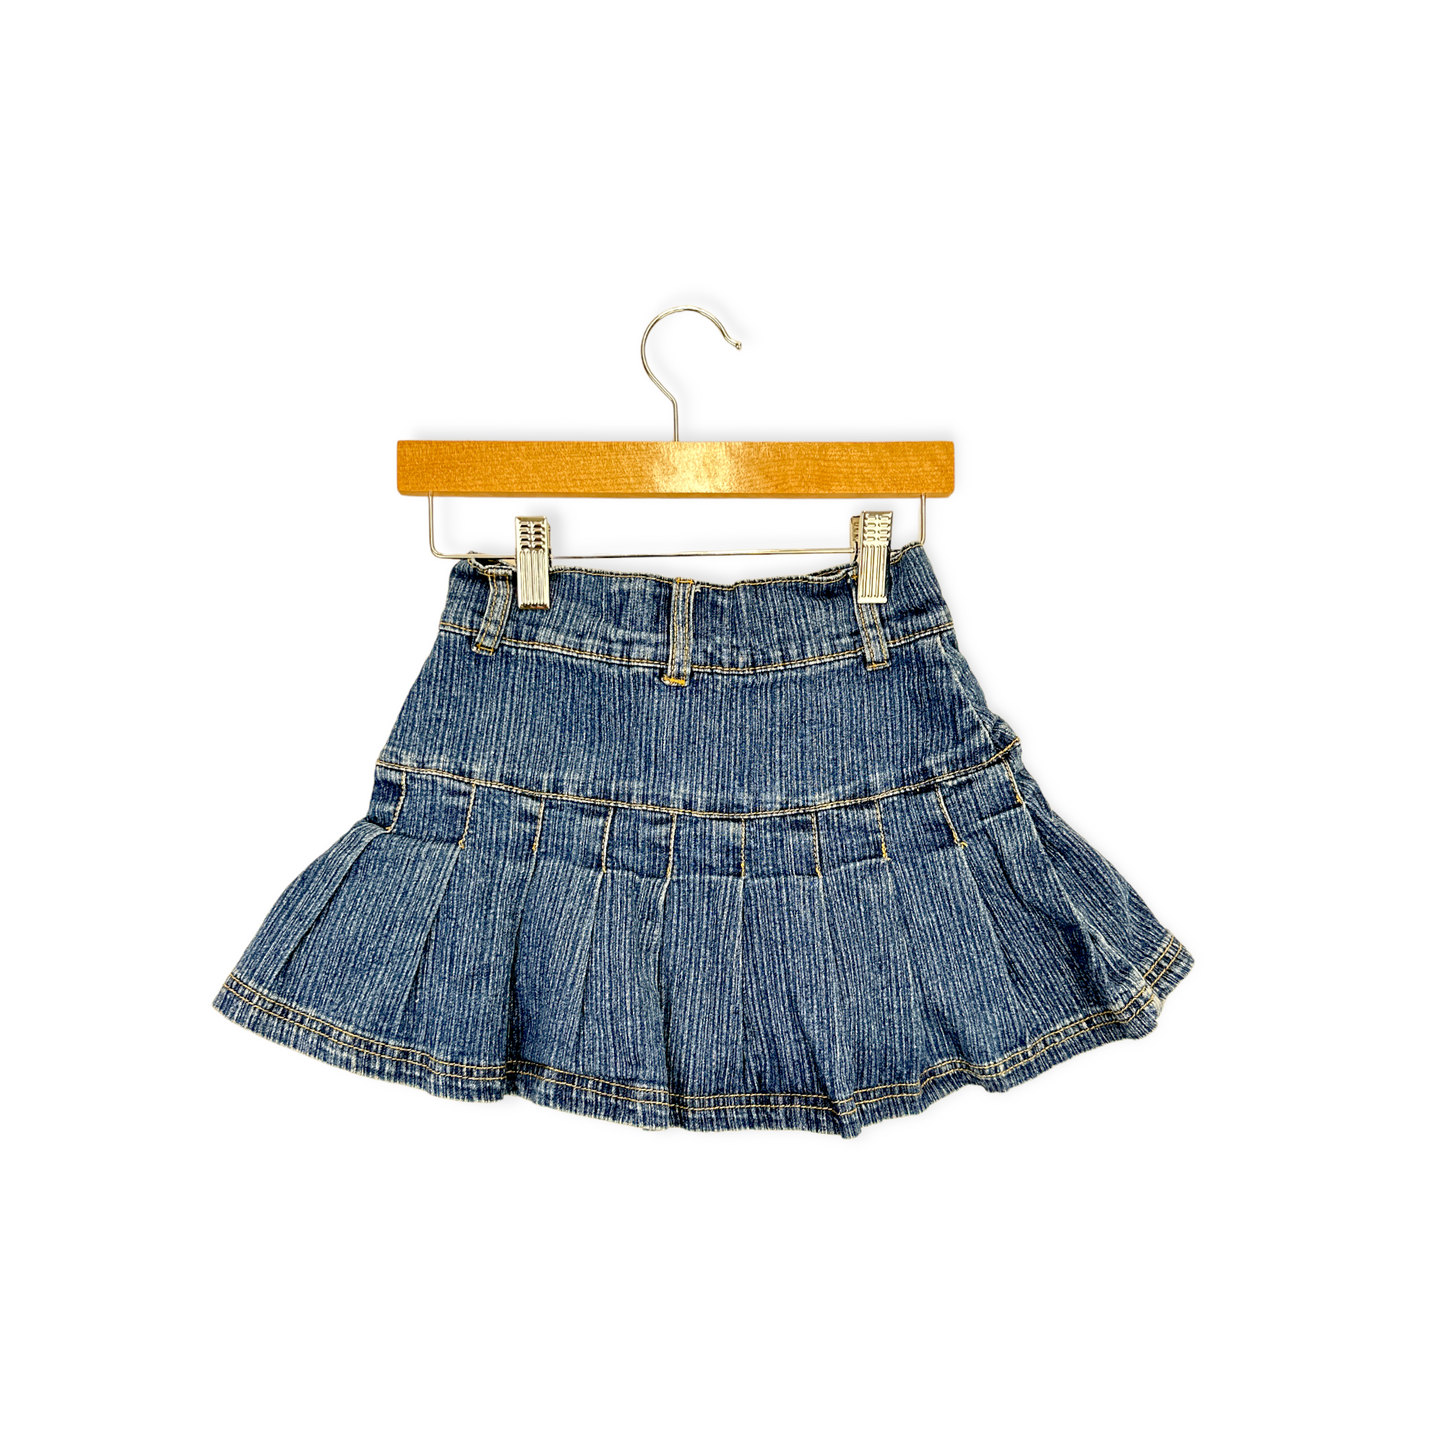 Vintage Stretch Denim Tennis Skirt with Hidden Shorts - Size 8yr